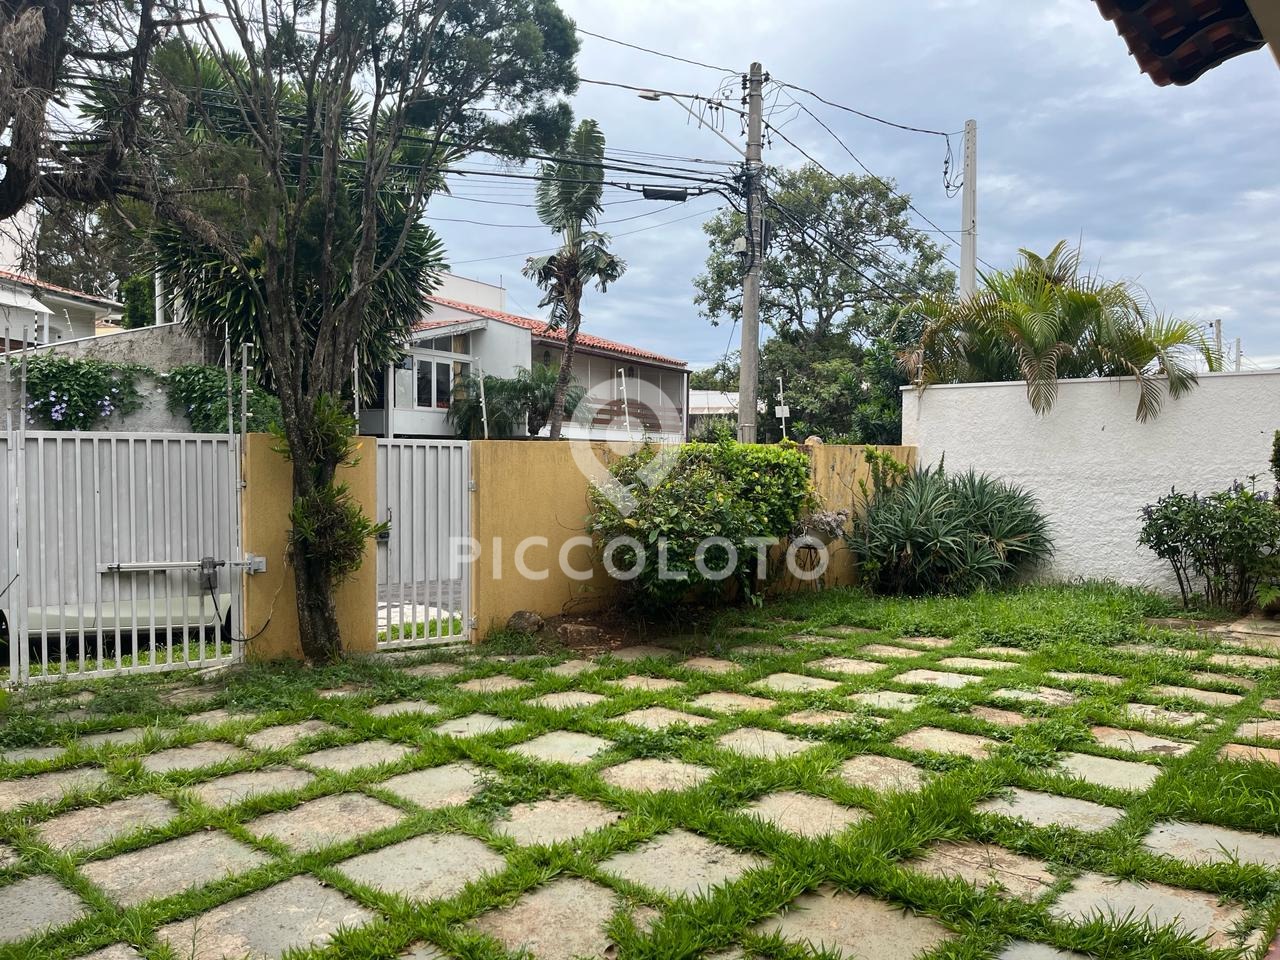 Piccoloto -Casa à venda no Jardim Guarani em Campinas